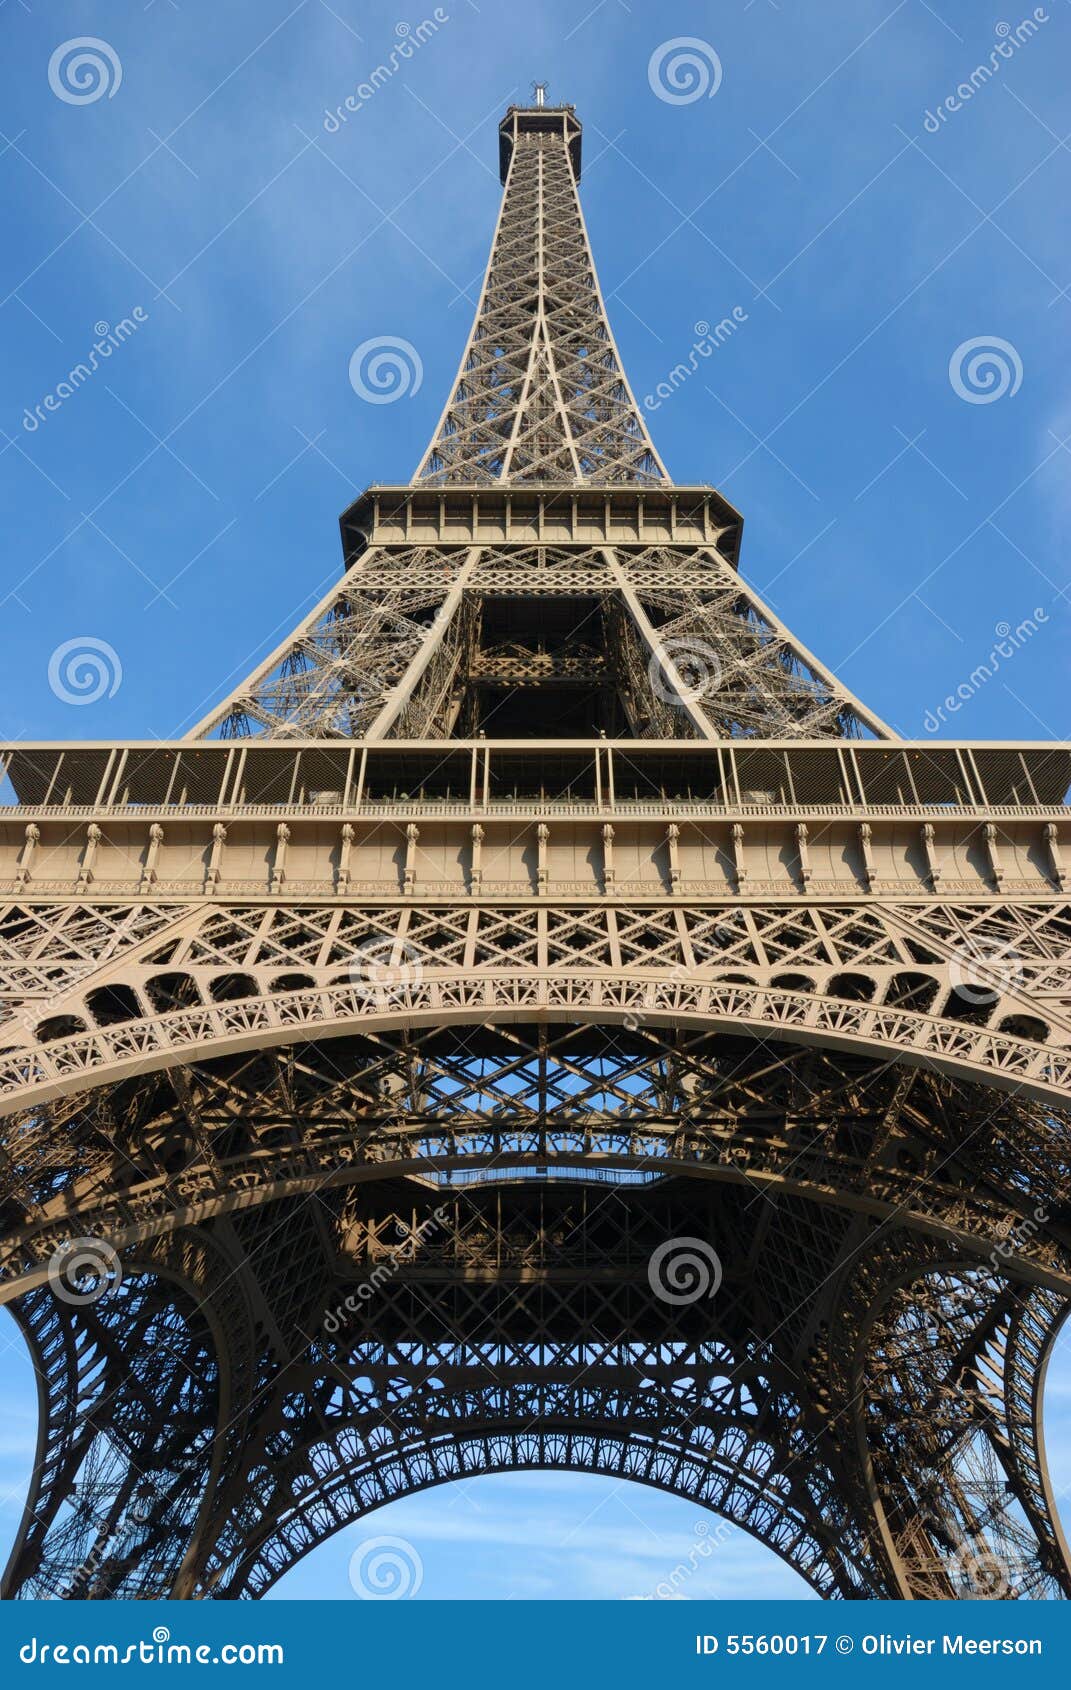 Torre Eiffel, verão. A torre Eiffel, monumento famoso em Paris, configuração para a exposição universal com construção de aço, foi supor para sea após este perfil da cor de exposition.icc encapsulated para o uso da cópia